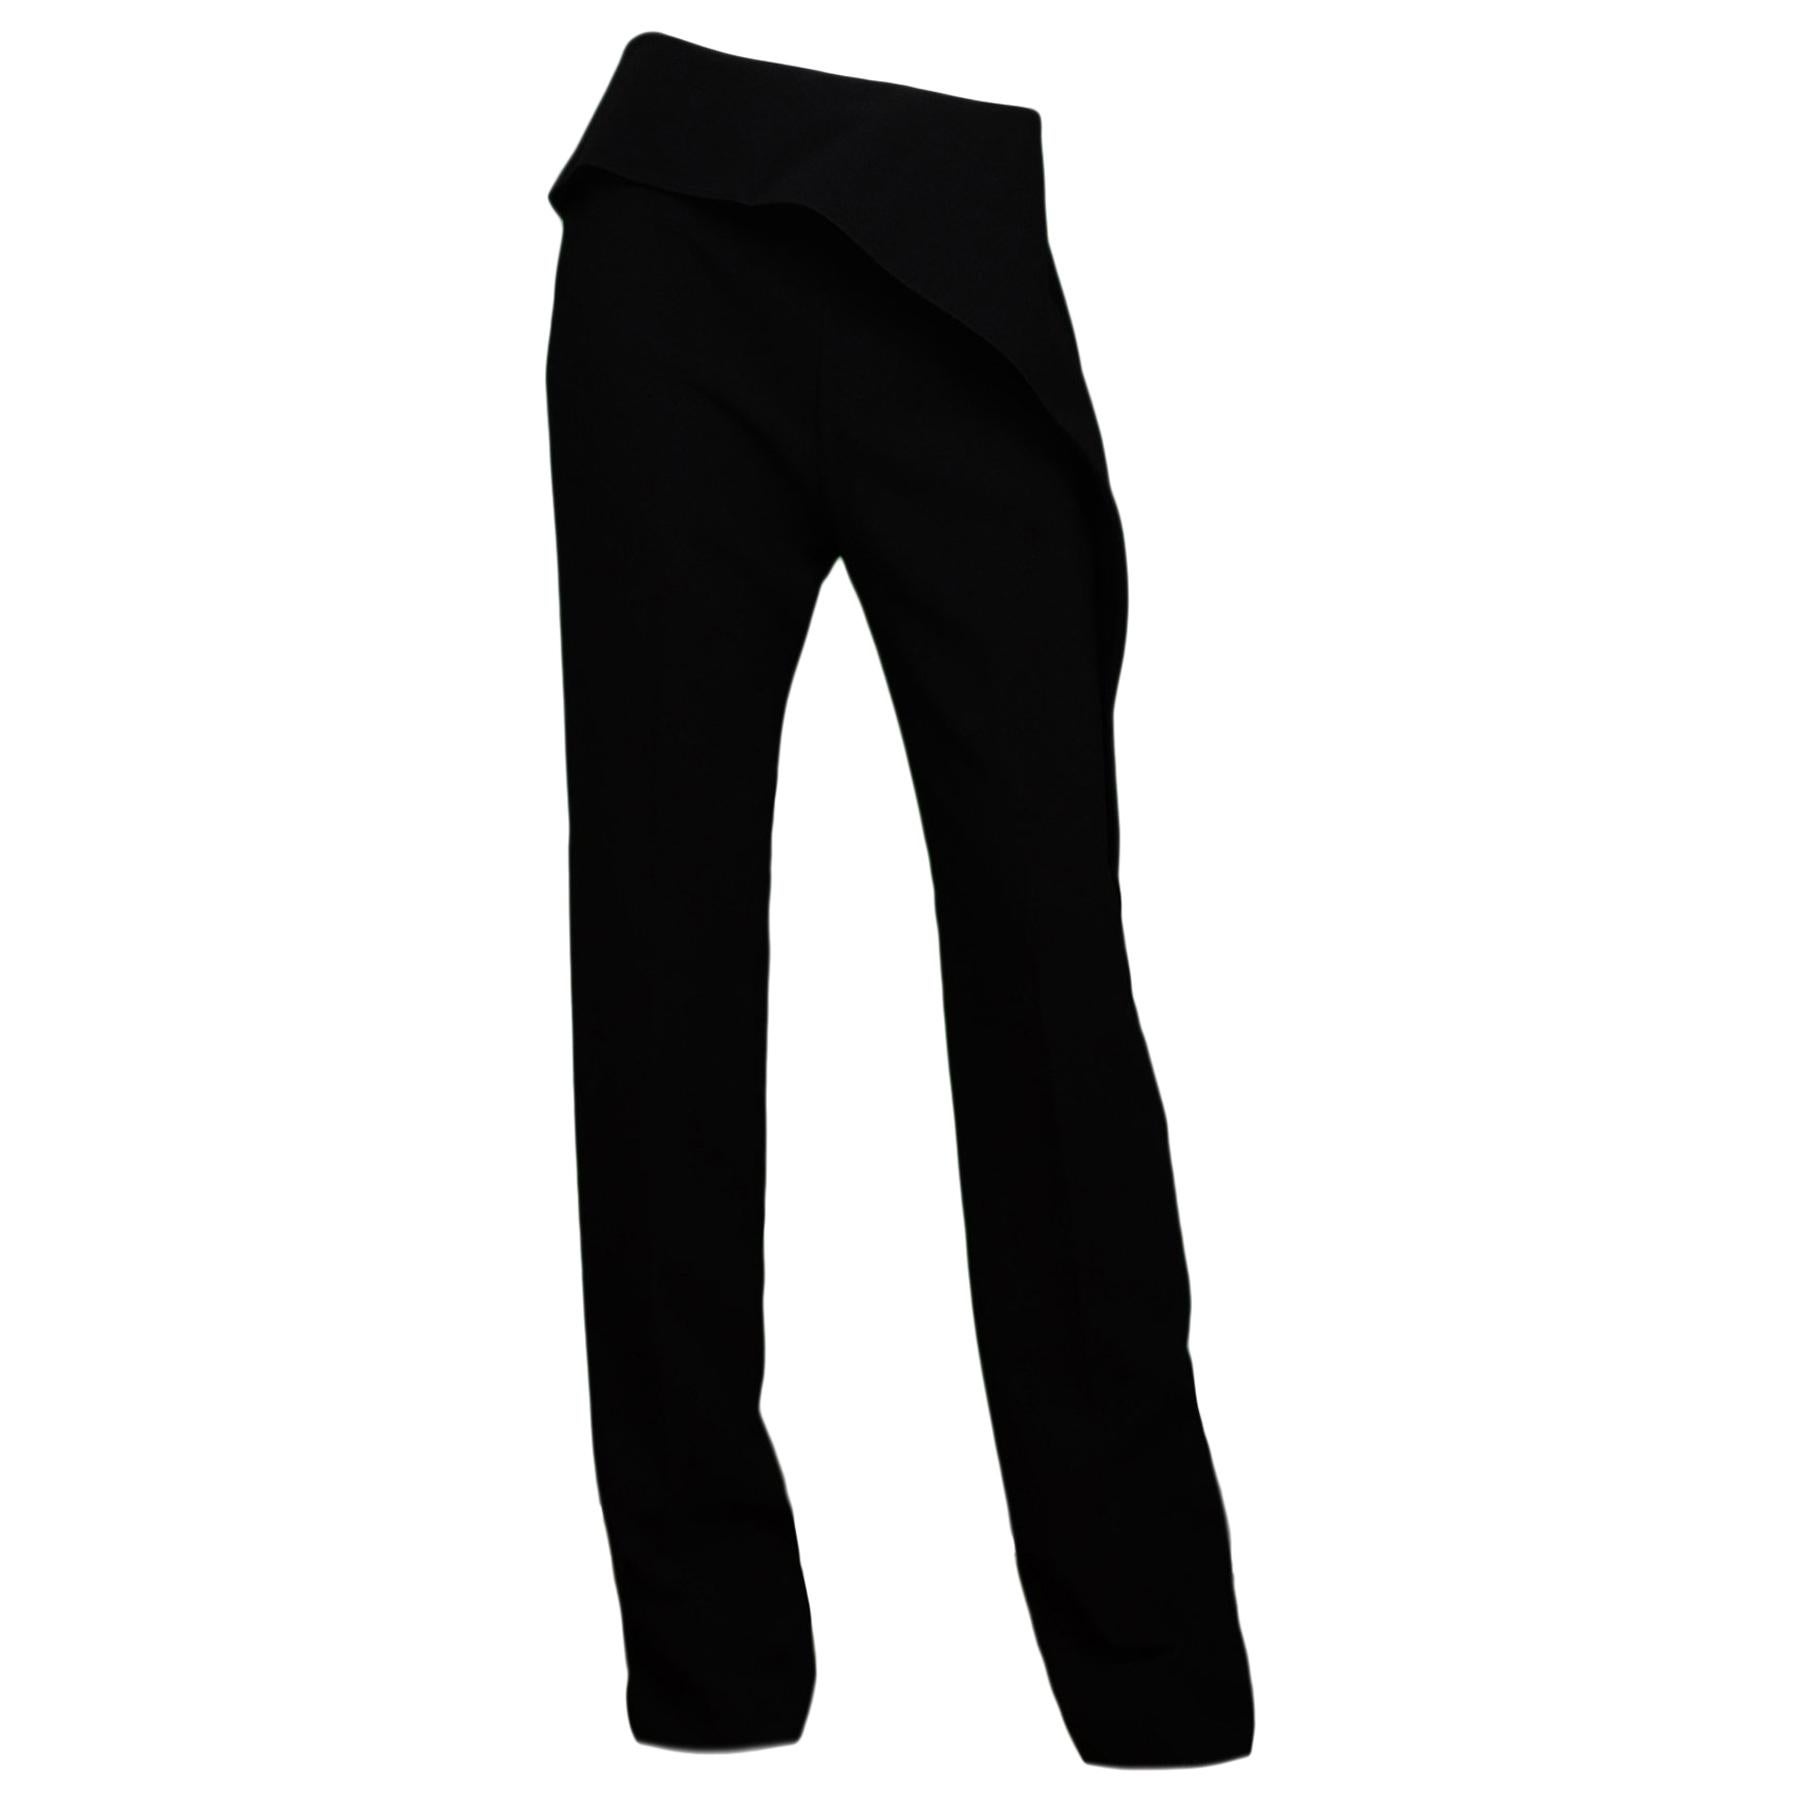 Balenciaga Black Slacks Pants W/ Ruffle Overlay Sz 42